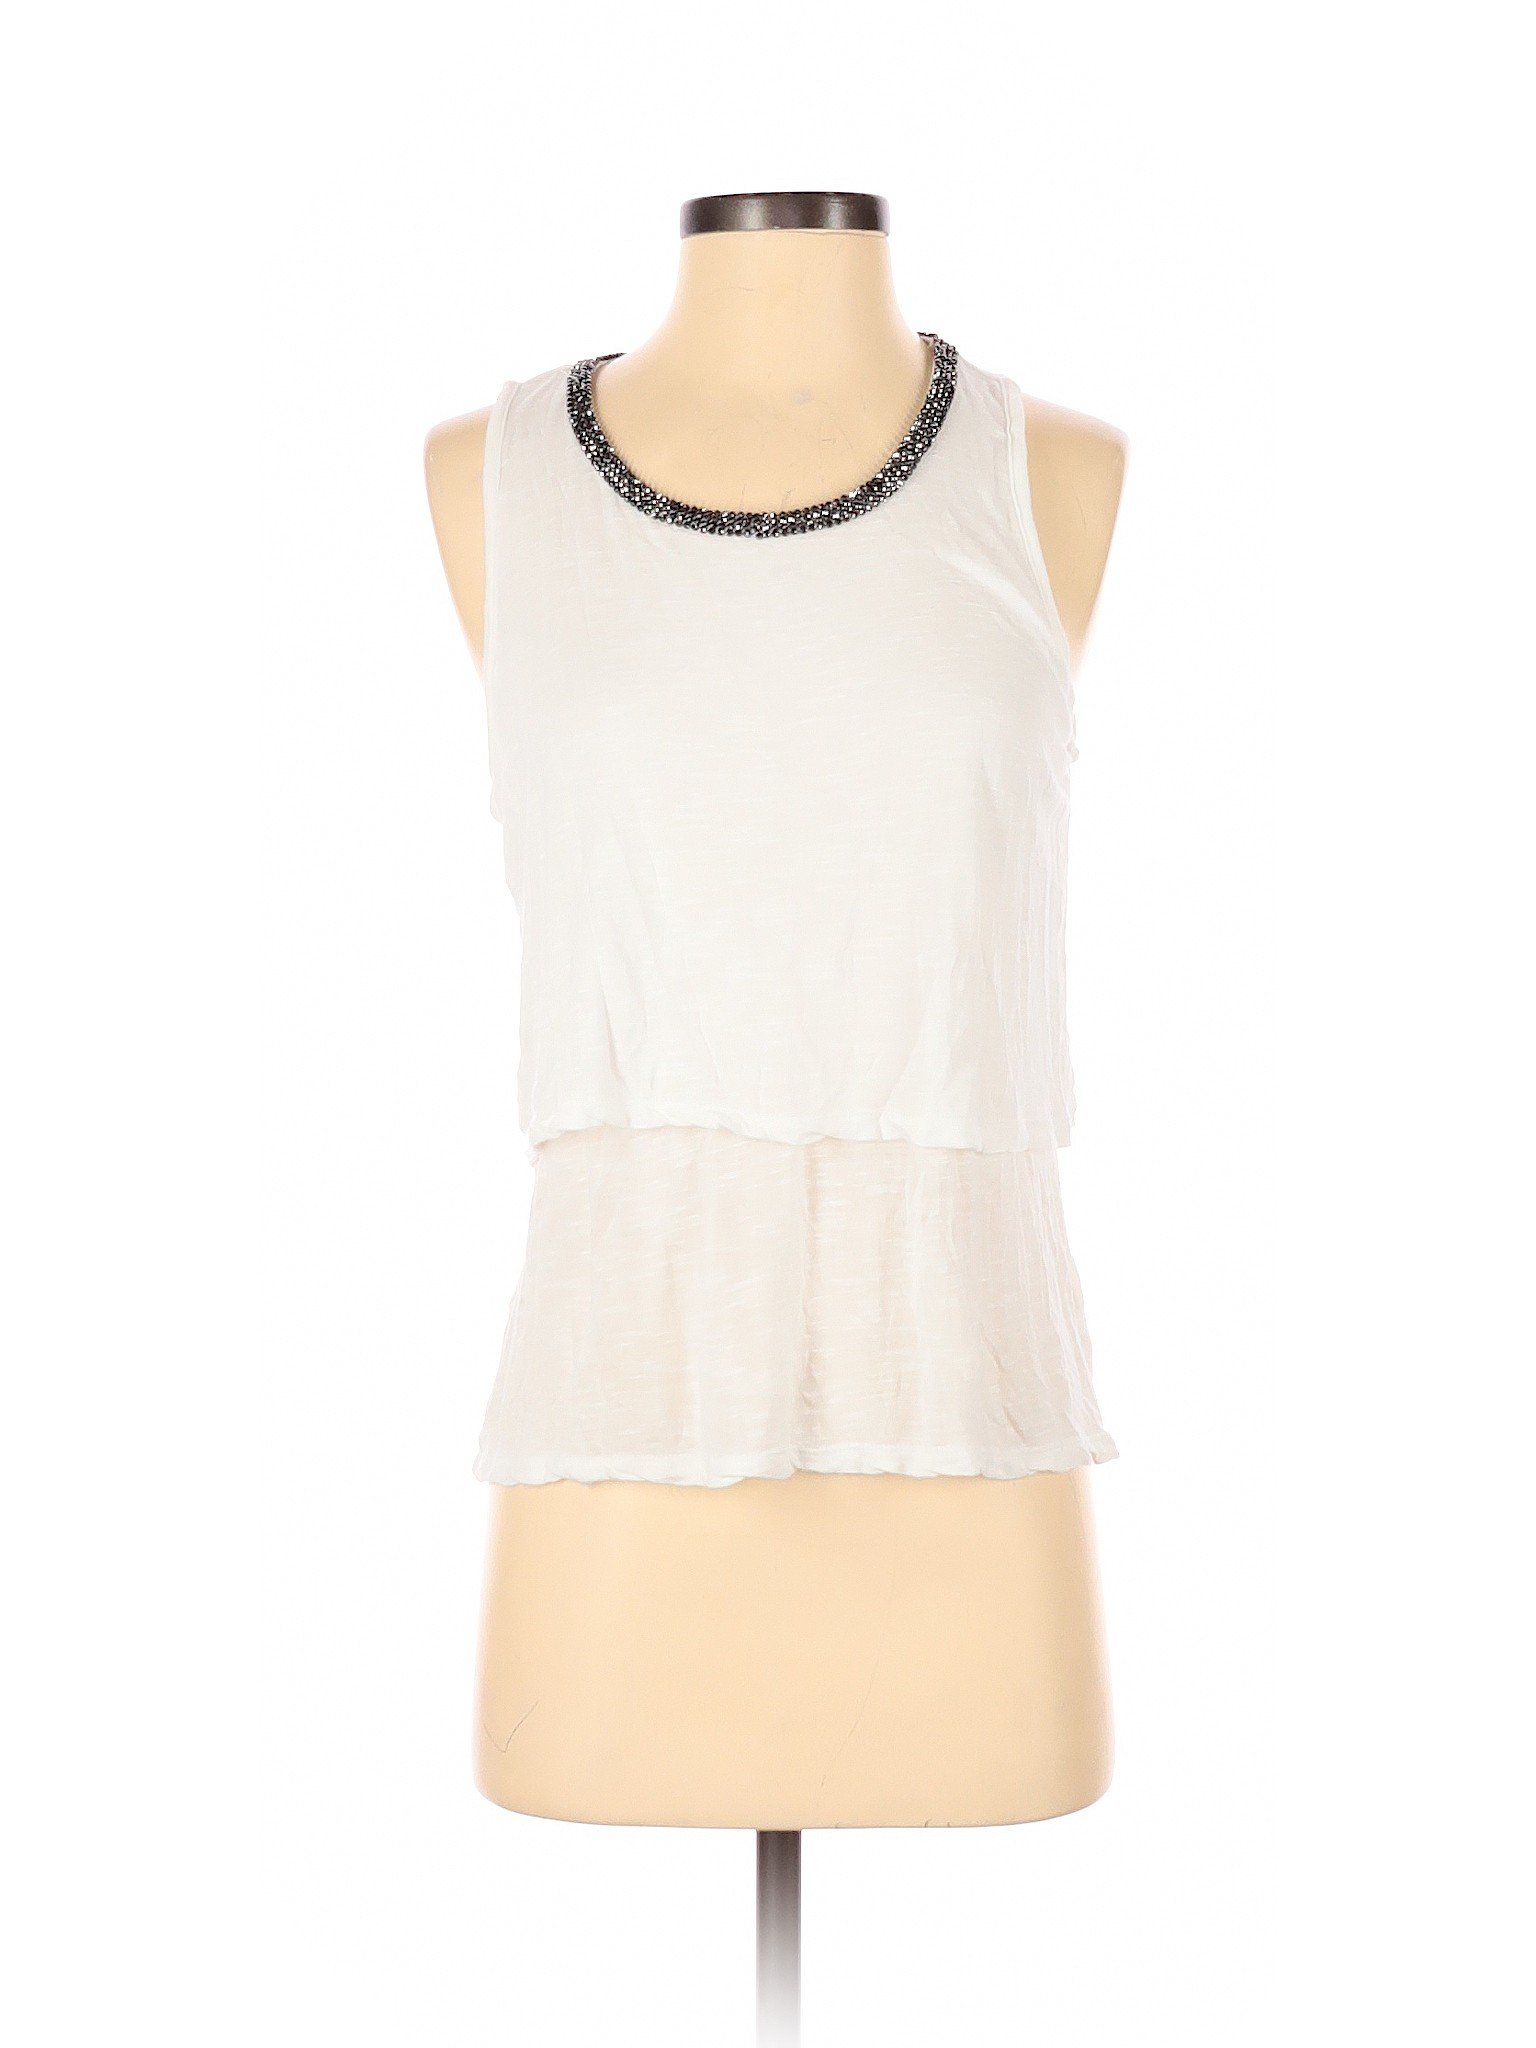 Dalia Collection Women White Sleeveless Top S | eBay